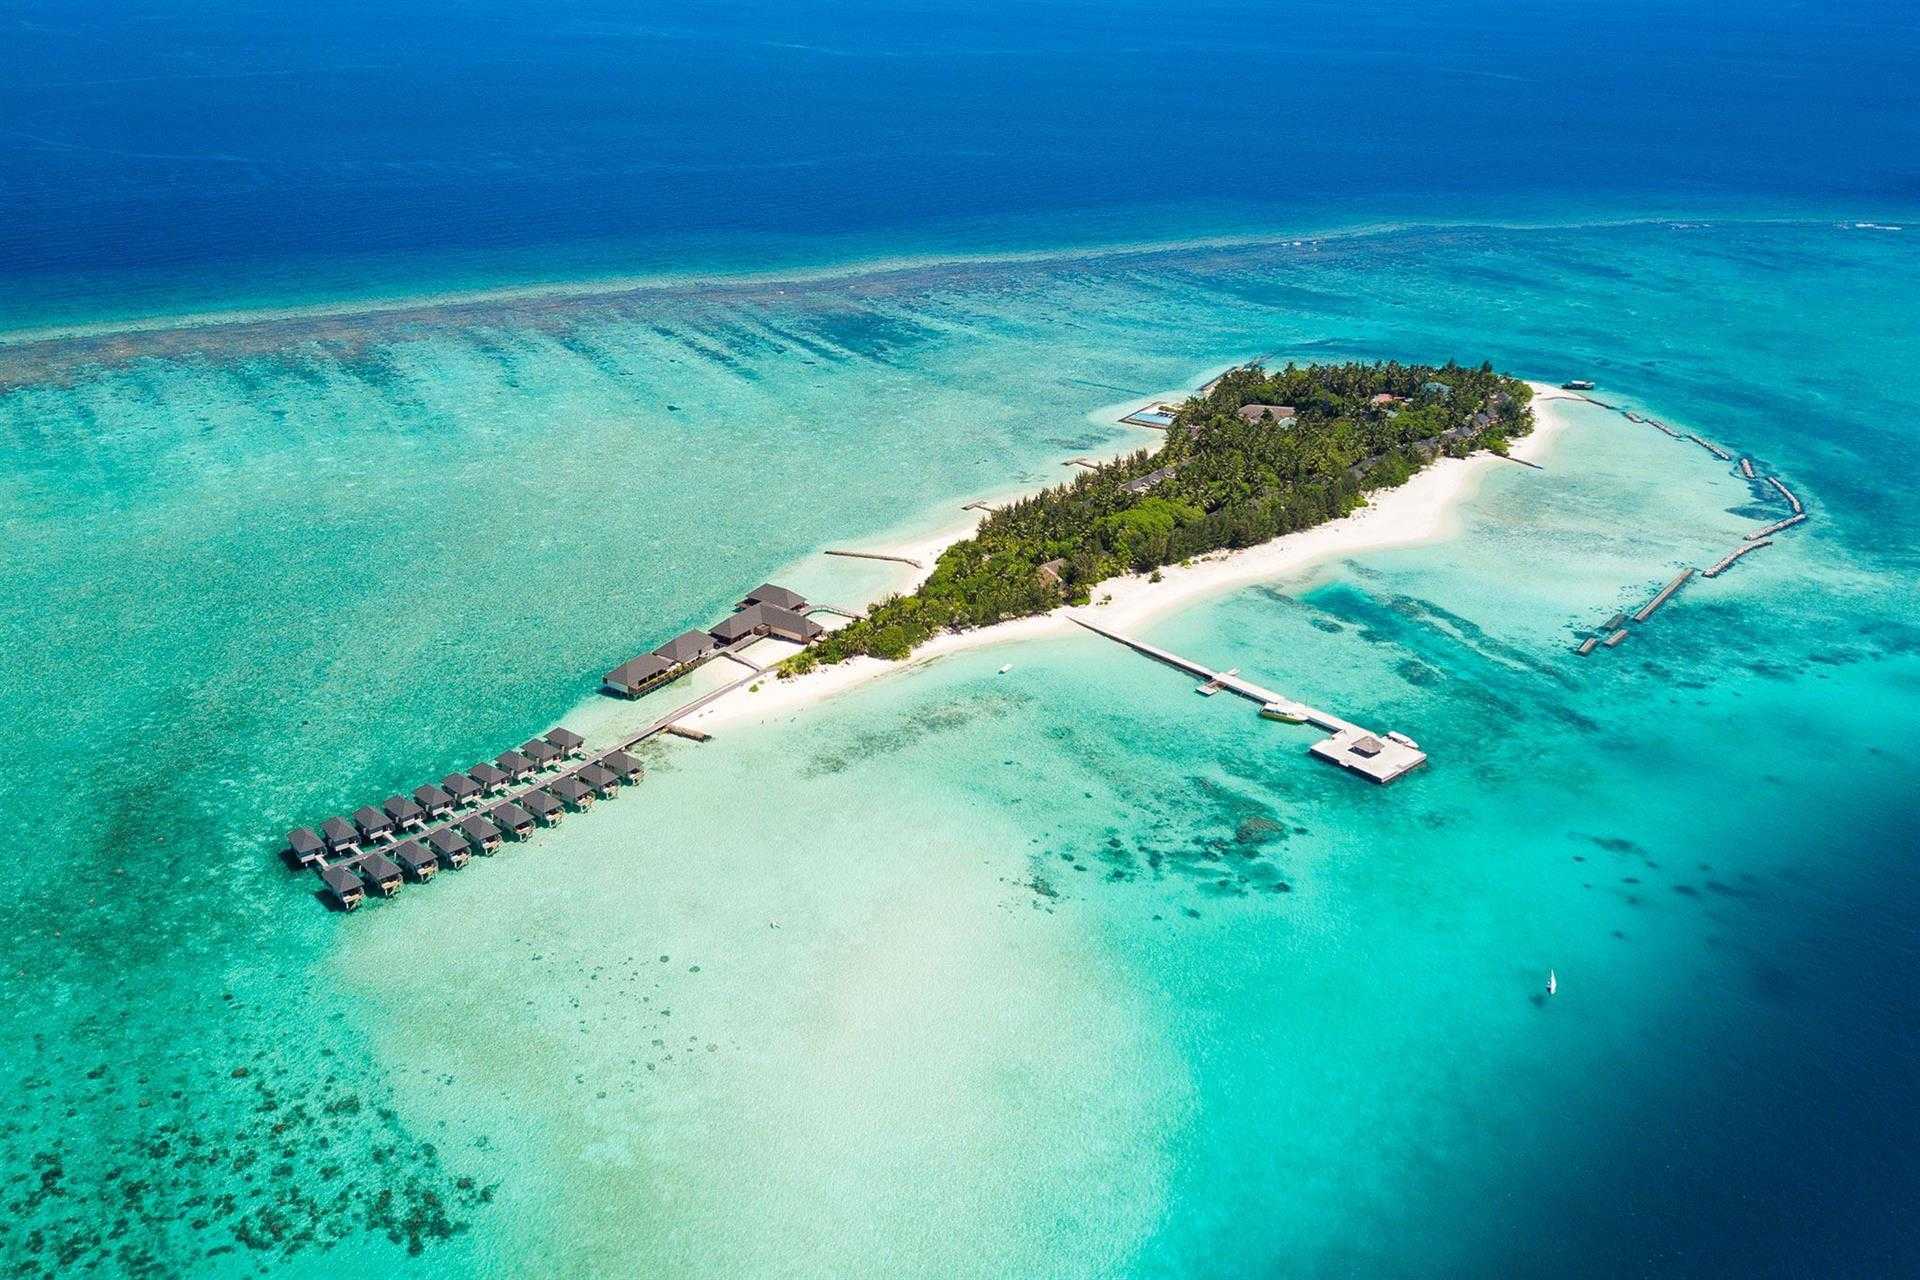 Курорты Северного Мале туристы единогласно считают лучшими на Мальдивах, однако они и самые дорогие Отдыхая здесь, вы не захотите ехать куда-либо еще – на островах атолла есть всё необходимое: инфраструктура, развлечения, культурные достопримечательности